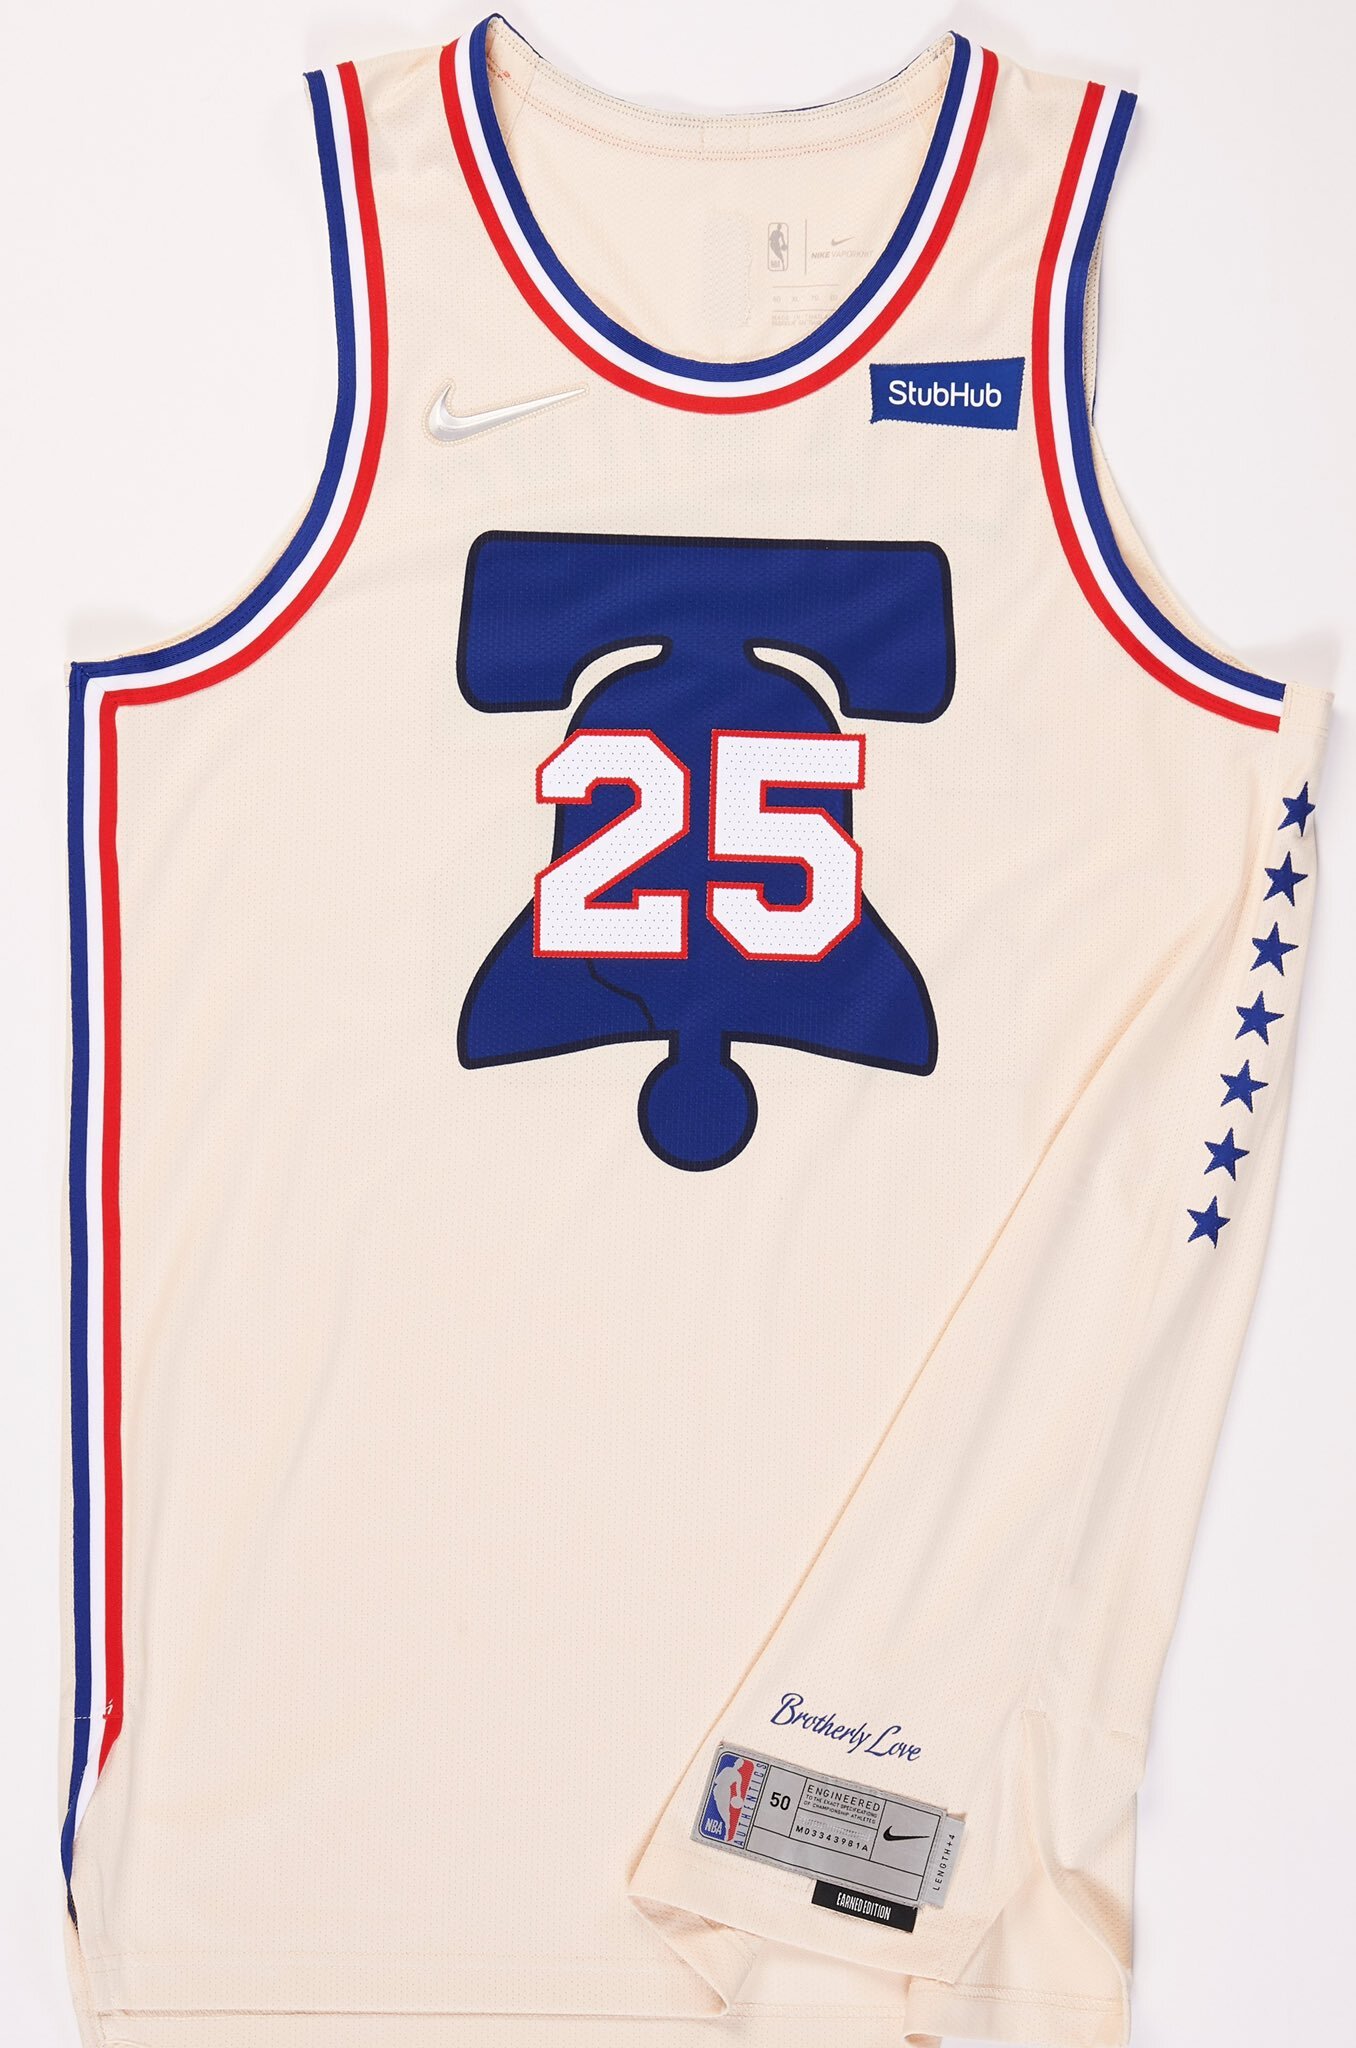 2020-21 Nike NBA Earned Edition Jerseys